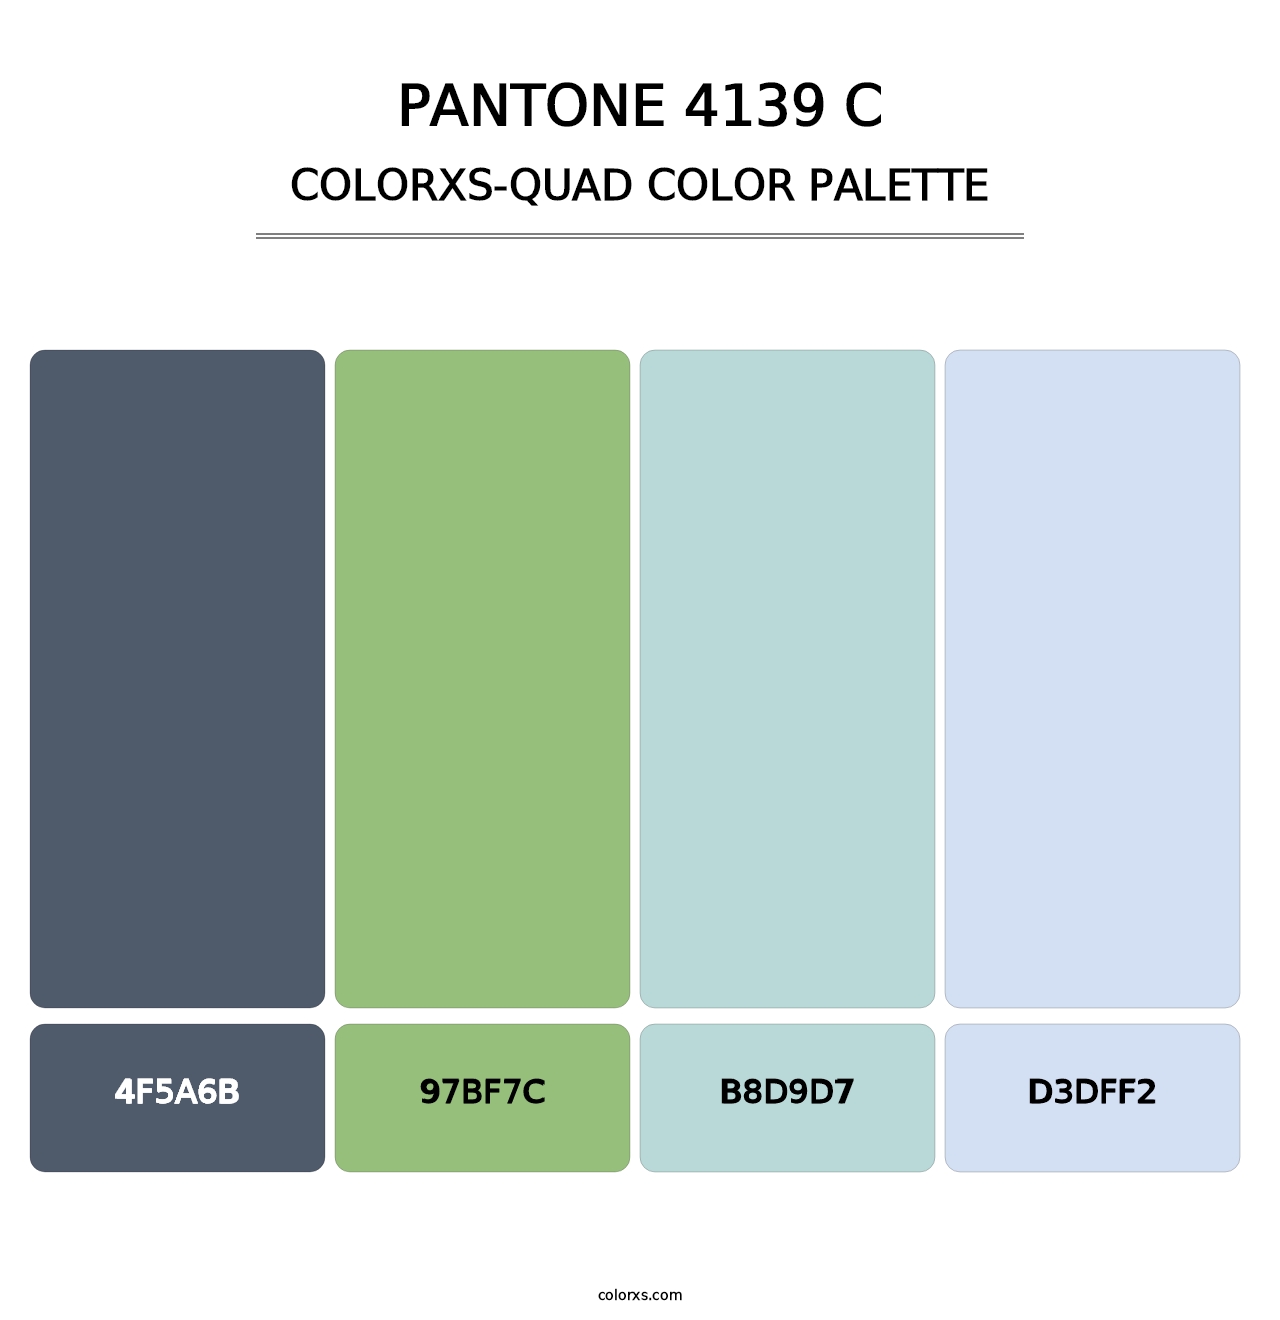 PANTONE 4139 C - Colorxs Quad Palette